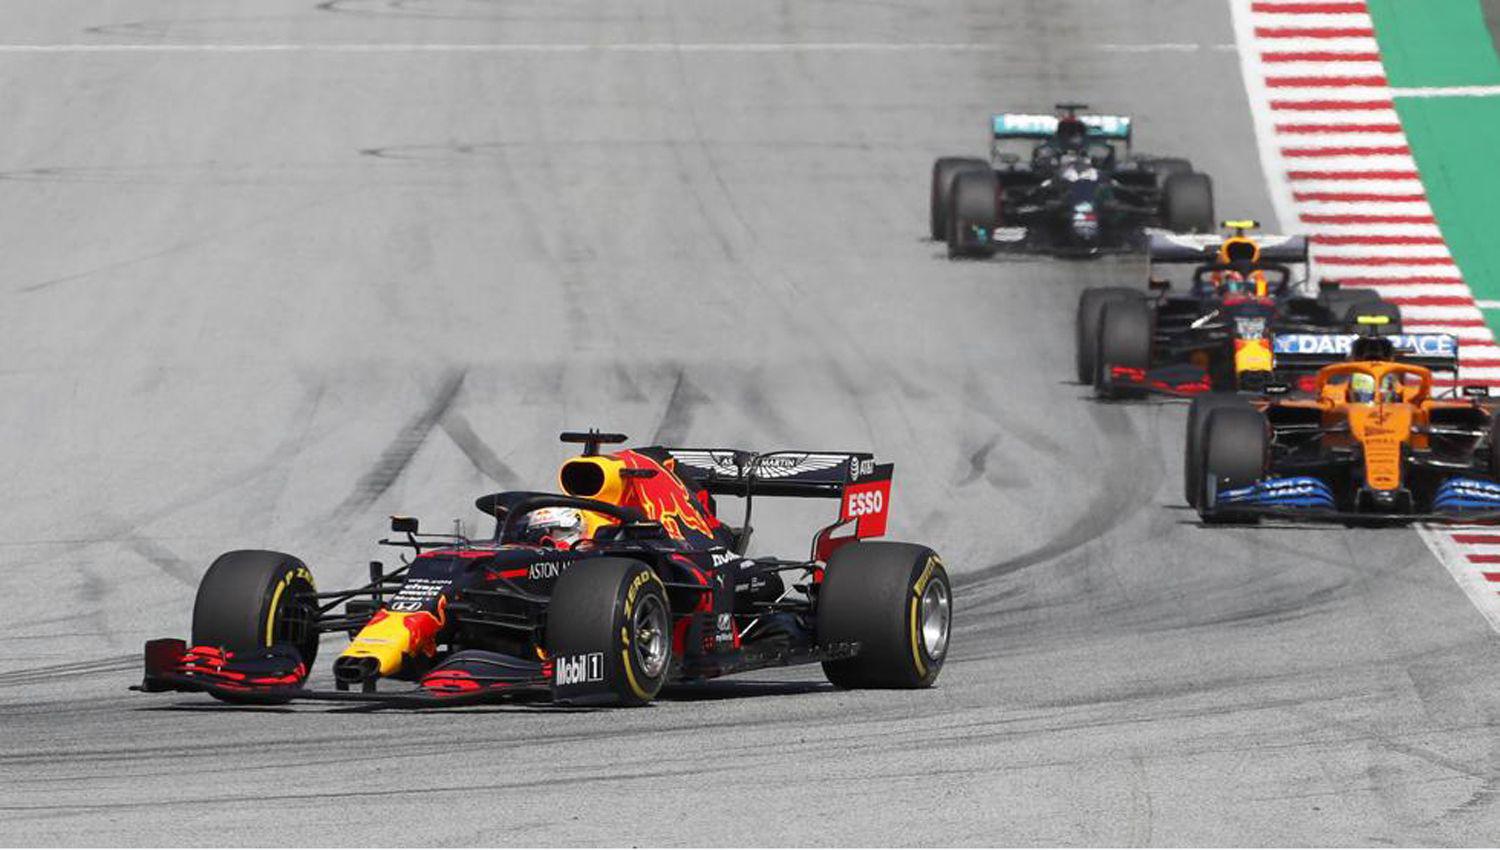 Gran Premio de Austria la carrera de Foacutermula 1 en vivo